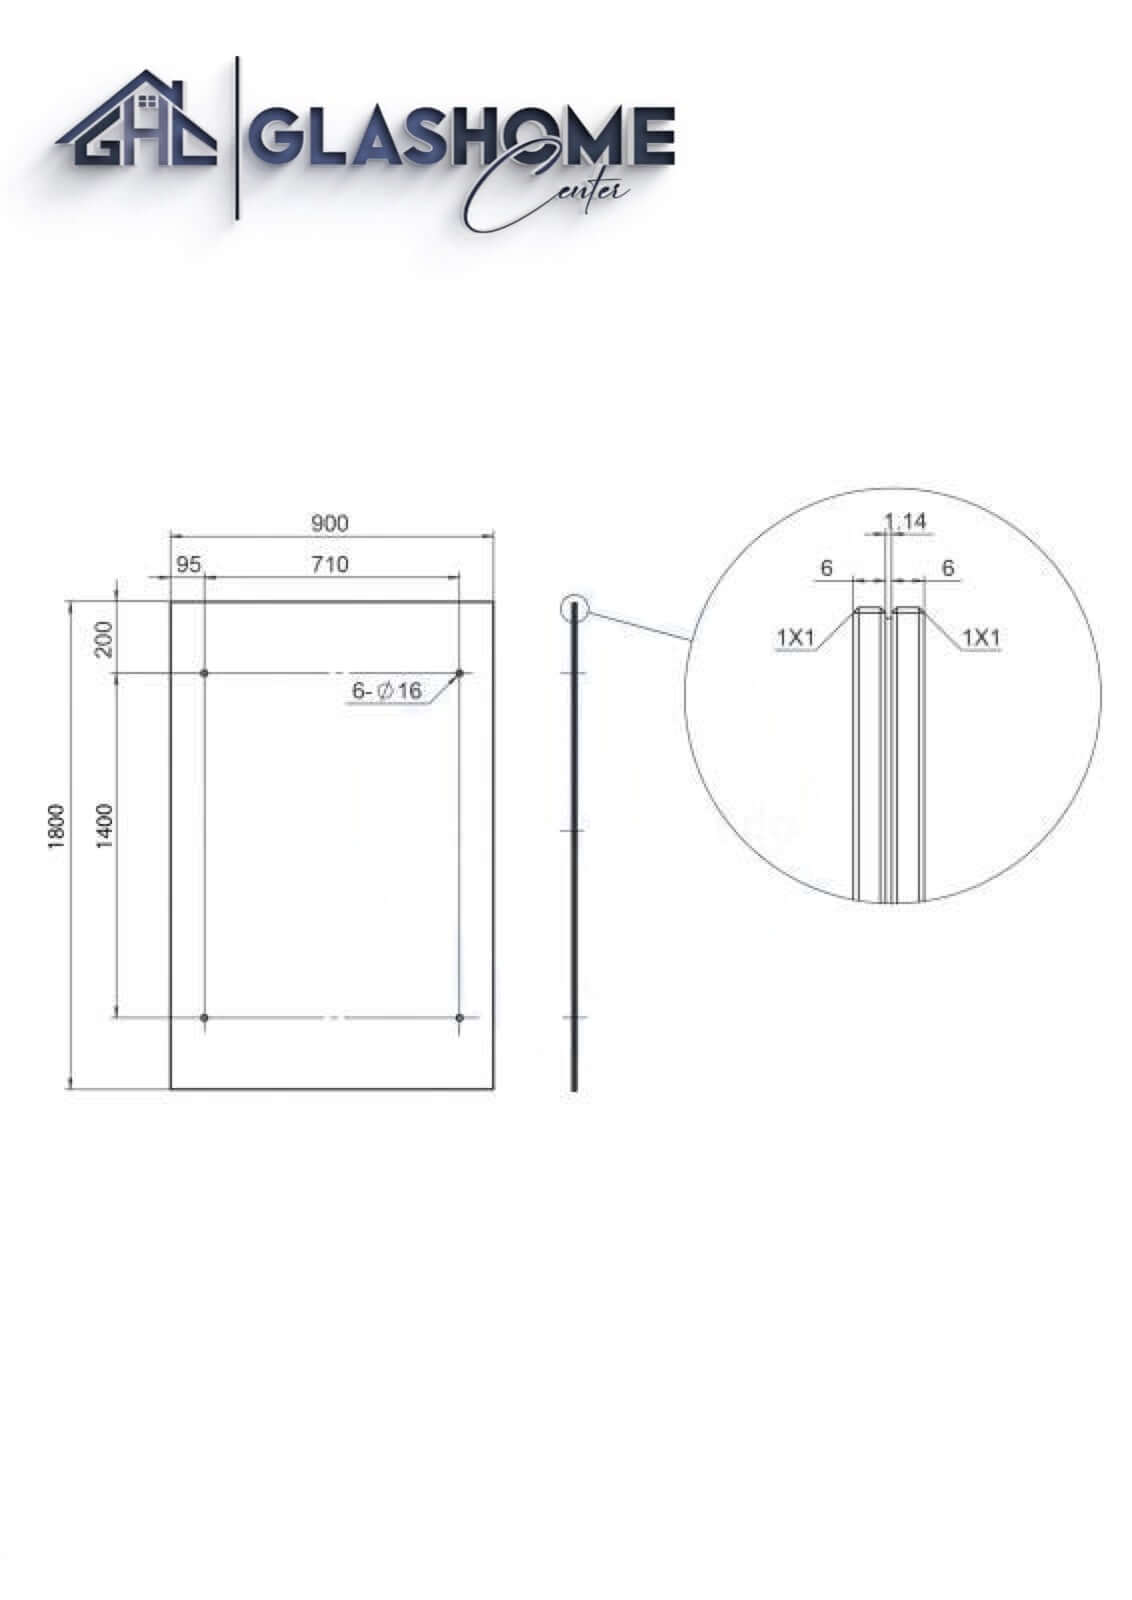 GlasHomeCenter - Glasvordach - Grauglas - 180x90cm - 13.1mm VSG - inkl. 2 schwarze Edelstahlhalterungen Variante "Paris"